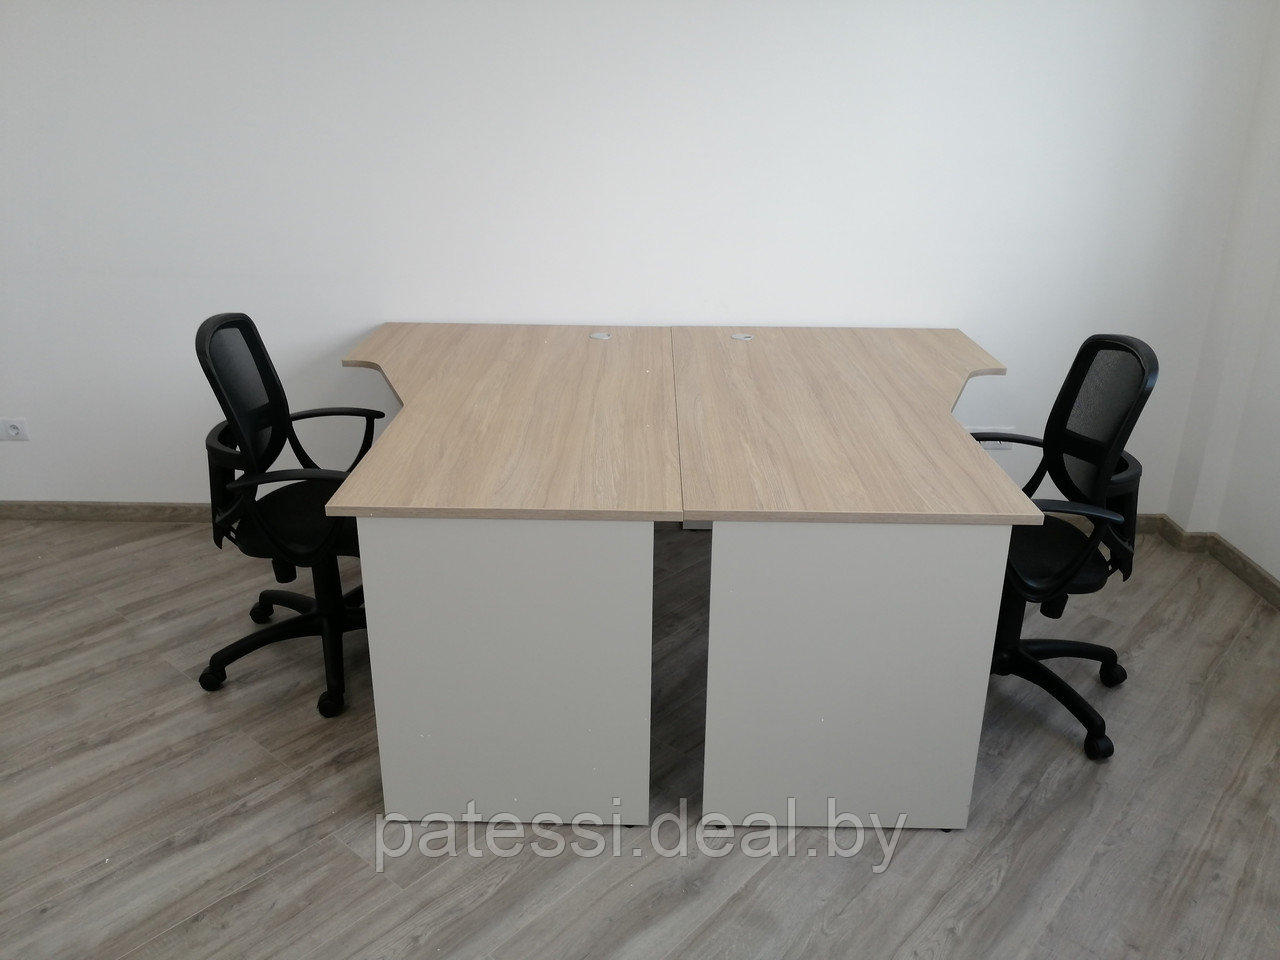 Комплект офисной мебели (2 стола +2 кресла)